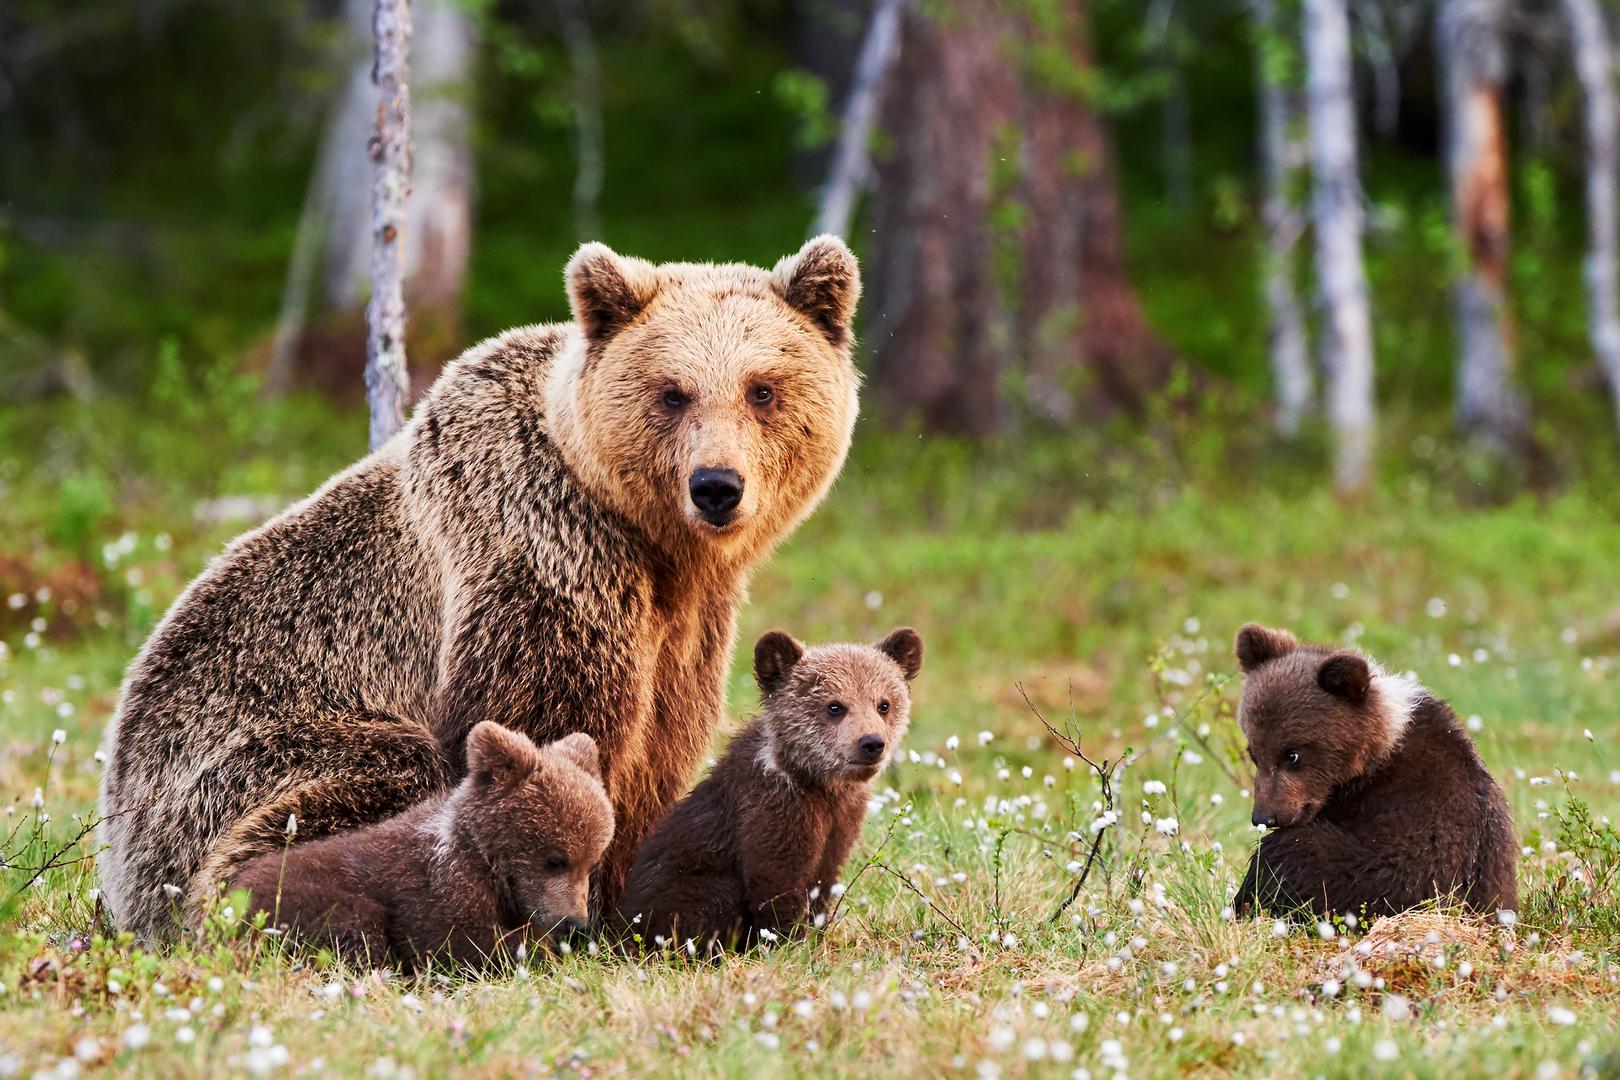 Slijede Nacionalni park Saxon u Švicarskoj, Dolomiti Belluno u Italiji i Wild Taiga u Finskoj. Ova posljednja je posebno poznata po svom bogatom životinjskom svijetu, koji uključuje vrste poput smeđih medvjeda i vukova za koje se nekada smatralo da su zauvijek izgubljeni iz Europe. Posjetitelji koji imaju dovoljno sreće da ugledaju ova veličanstvena stvorenja mogu svjedočiti rijetkom djeliću europske prirodne baštine.